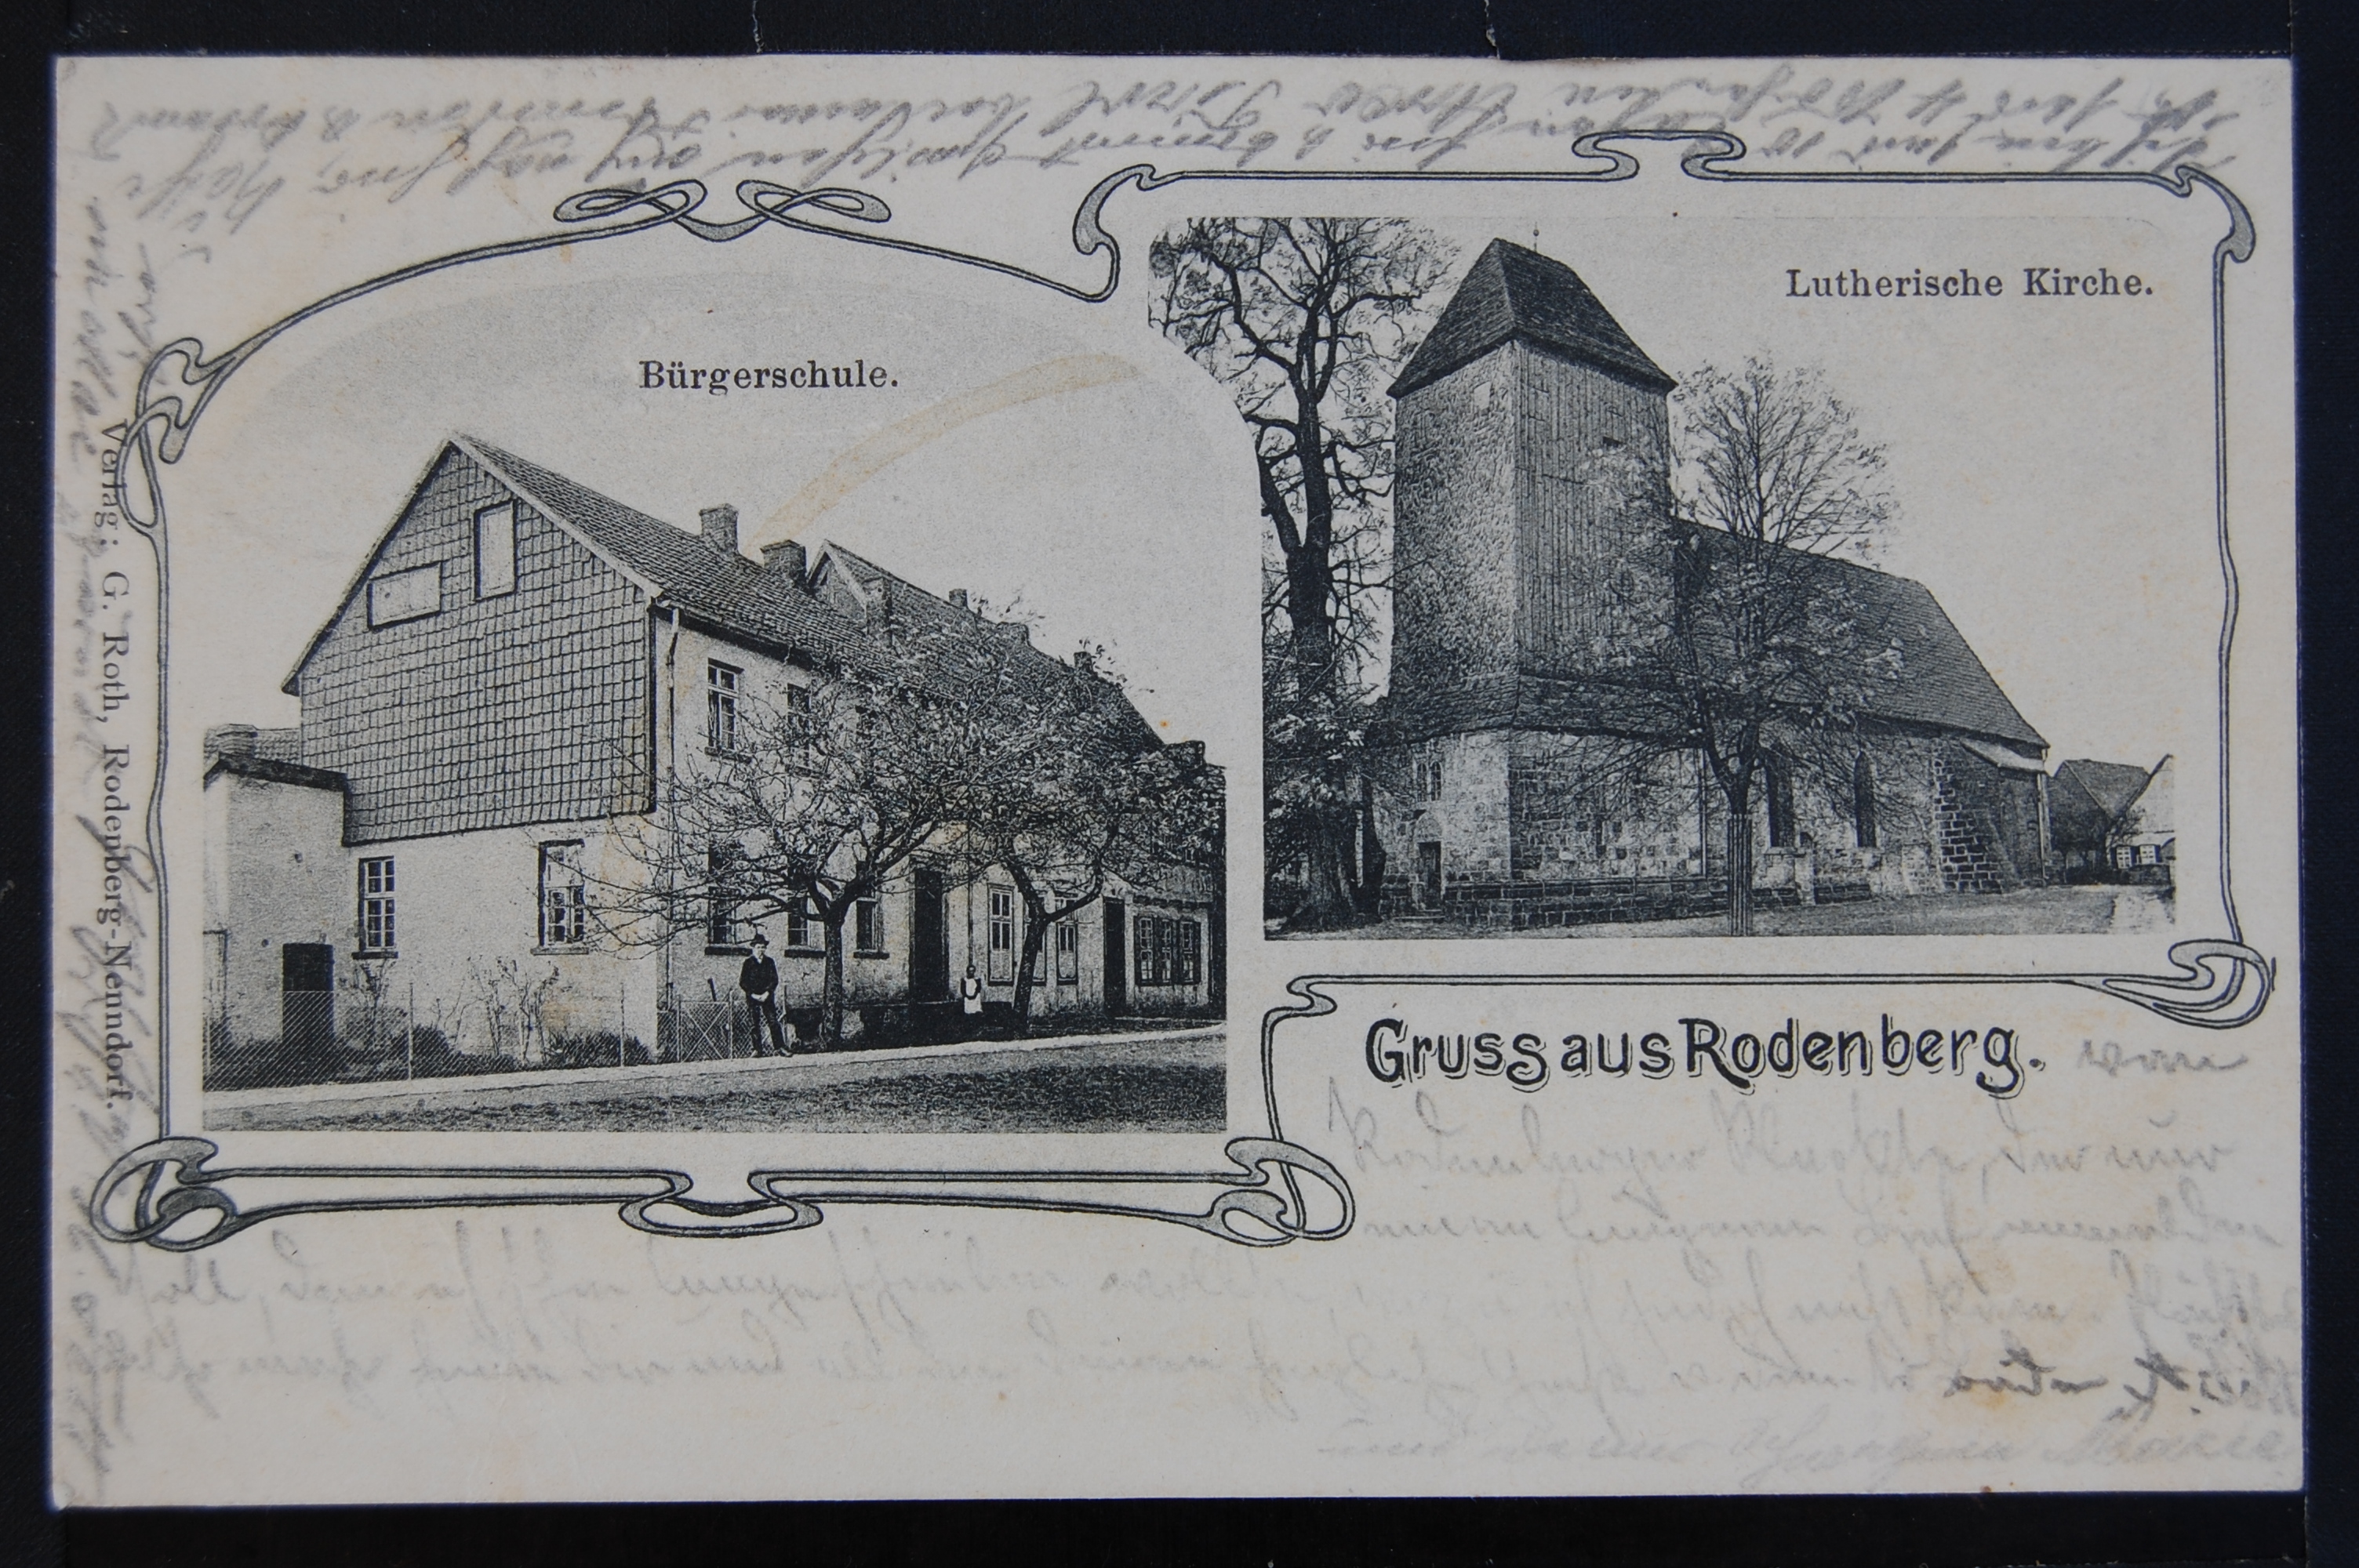 AK Rodenberg, Bürgerschule und Lutherische Kirche, Foto, 1902 (Museumslandschaft Amt Rodenberg e.V. CC BY-NC-SA)